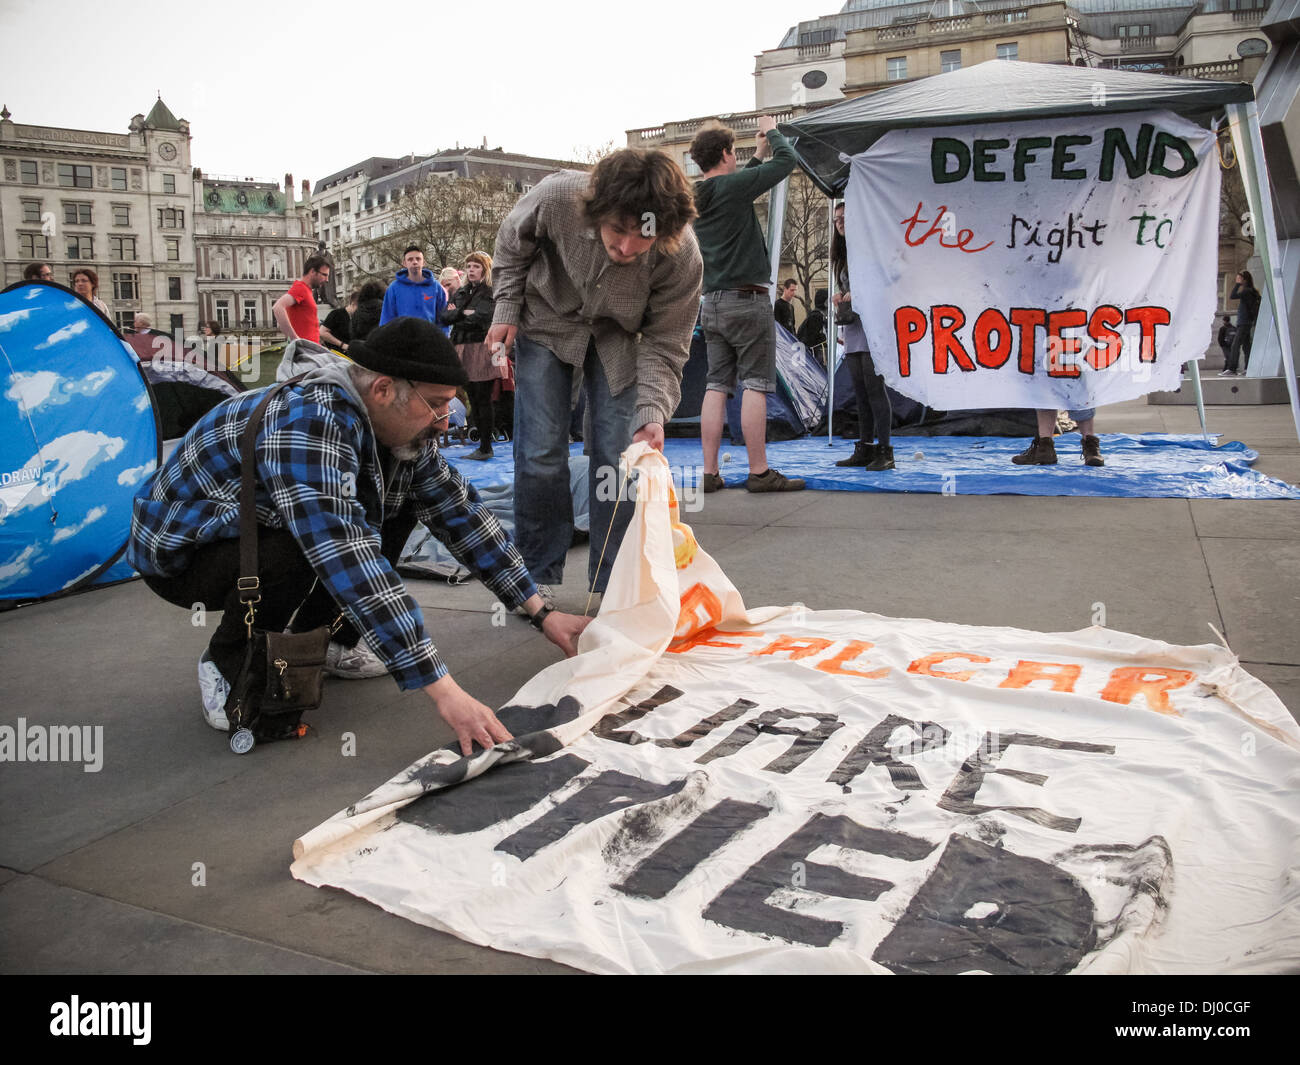 Verteidigt das Recht auf Protest Besetzung auf dem Londoner Trafalgar Square Stockfoto